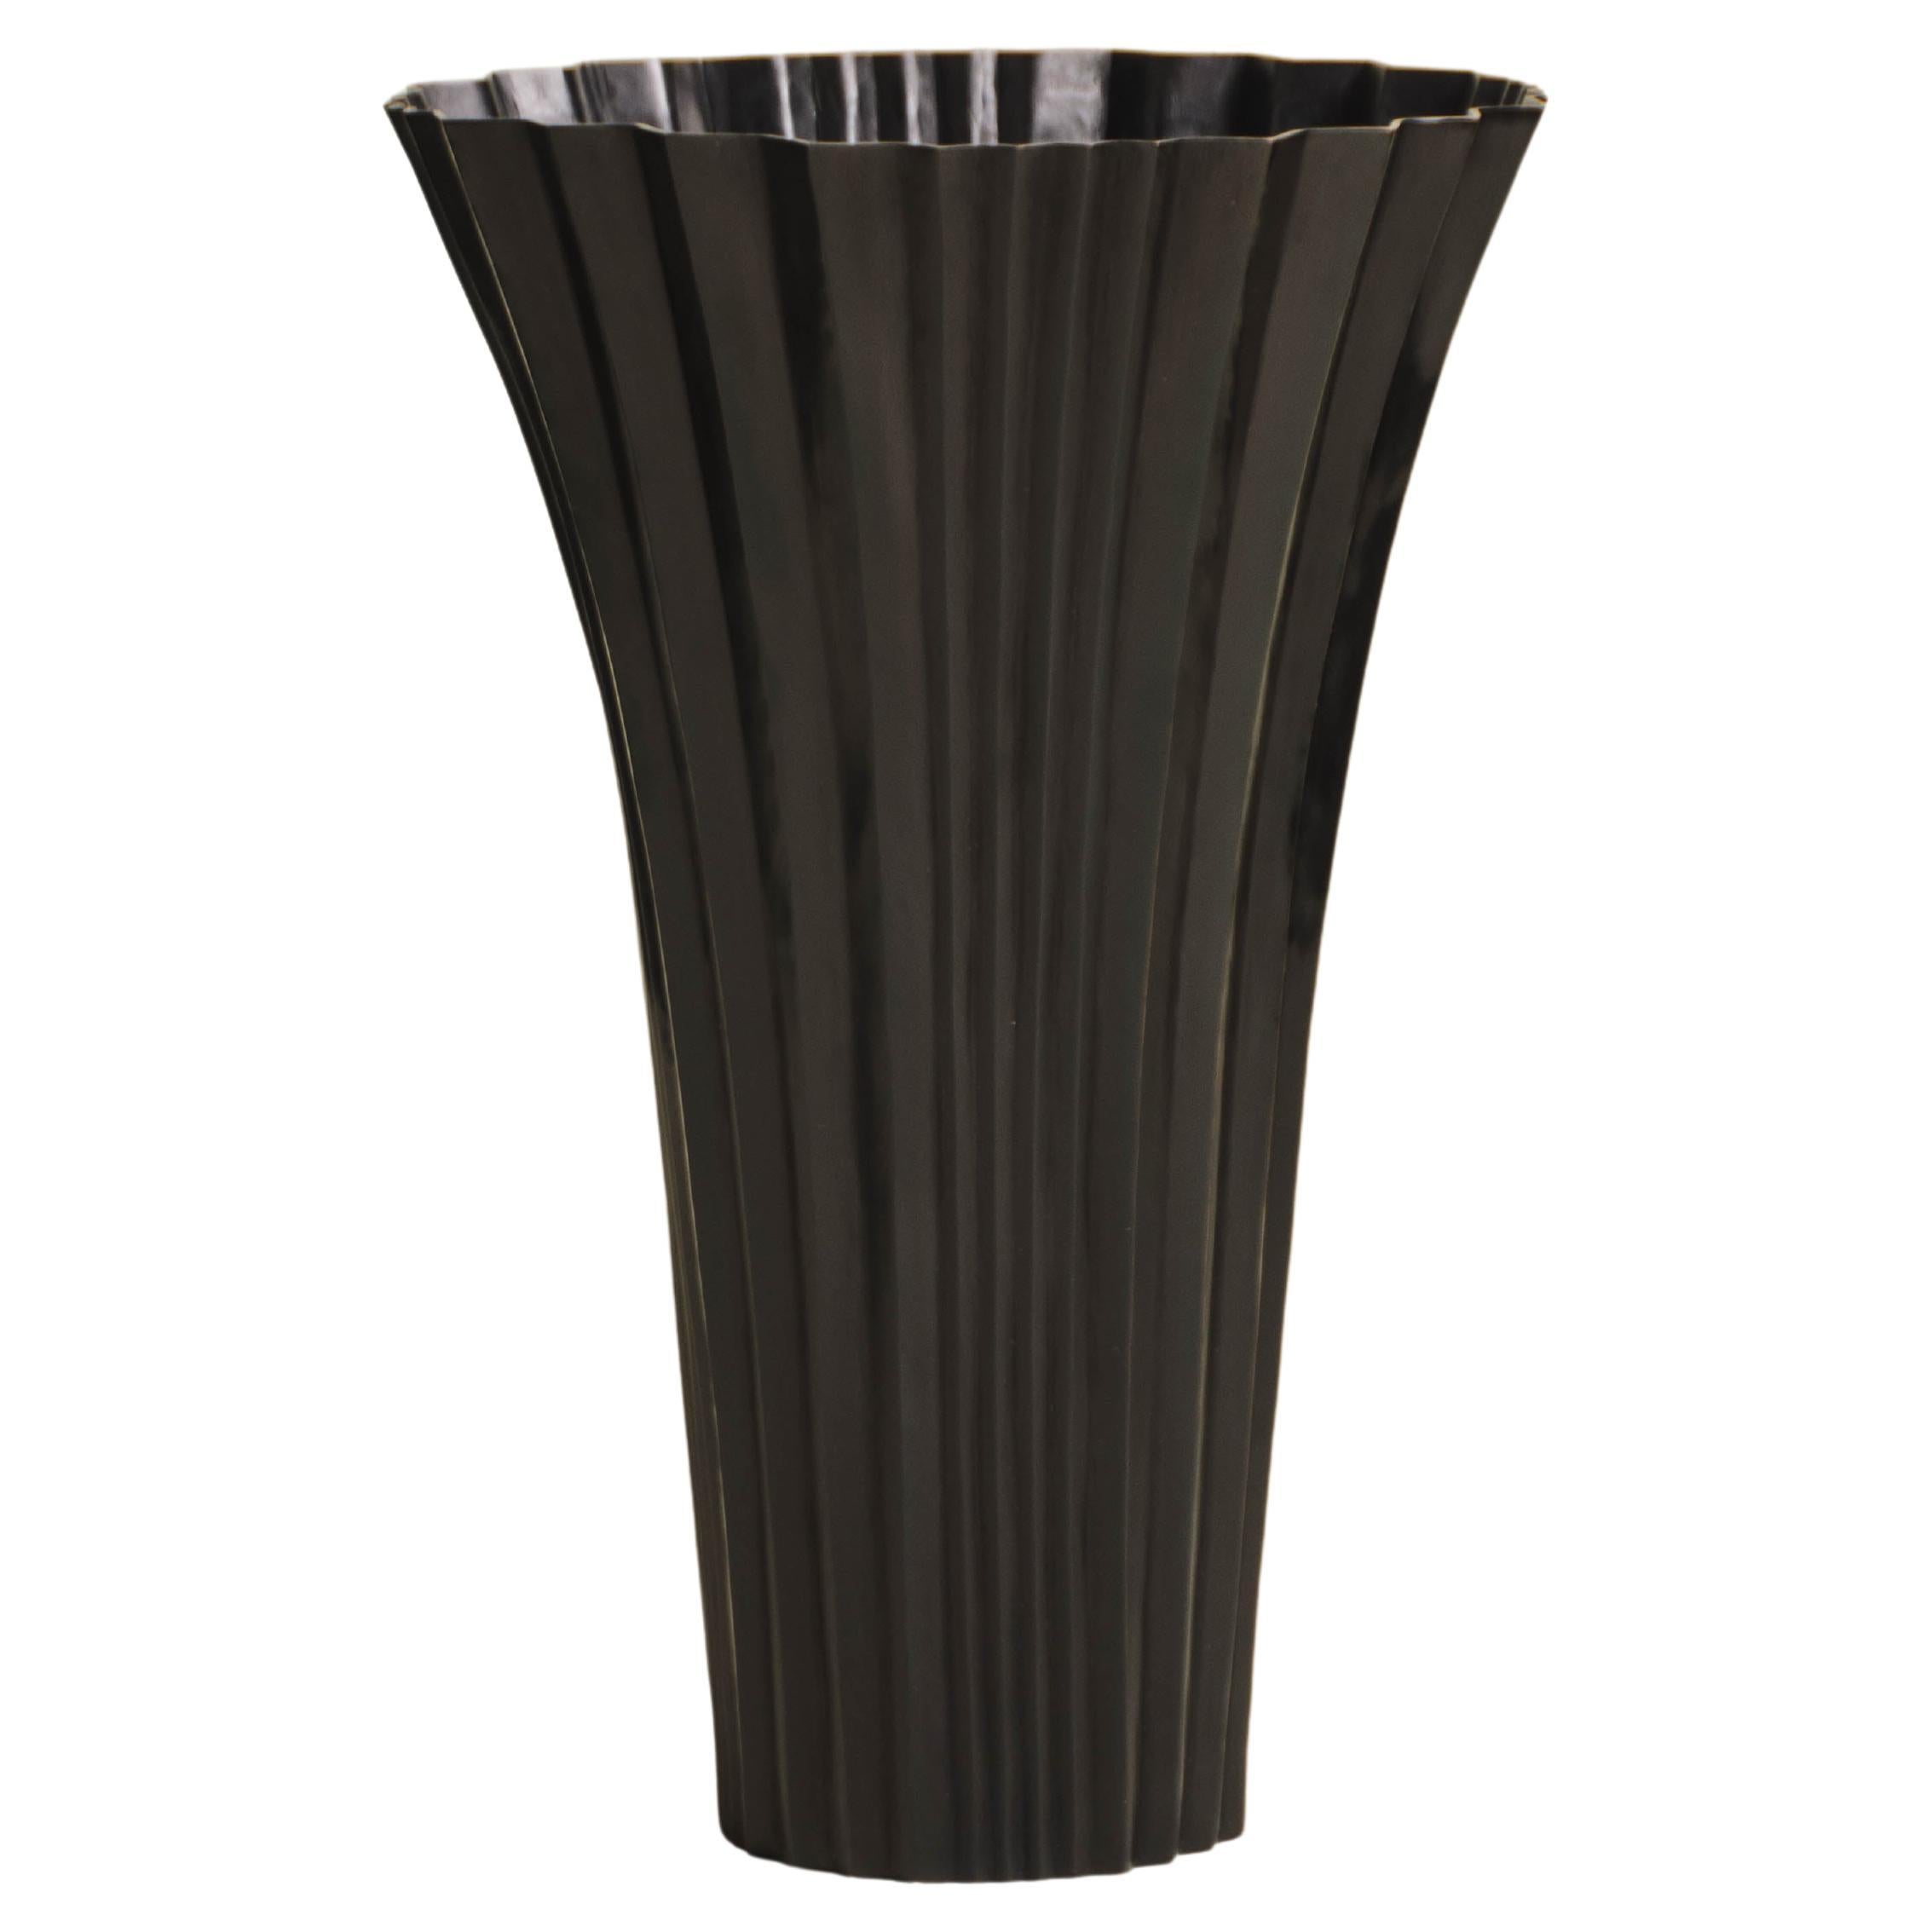 Vase contemporain en forme d'éventail repoussé en cuivre noir de Robert Kuo, édition limitée